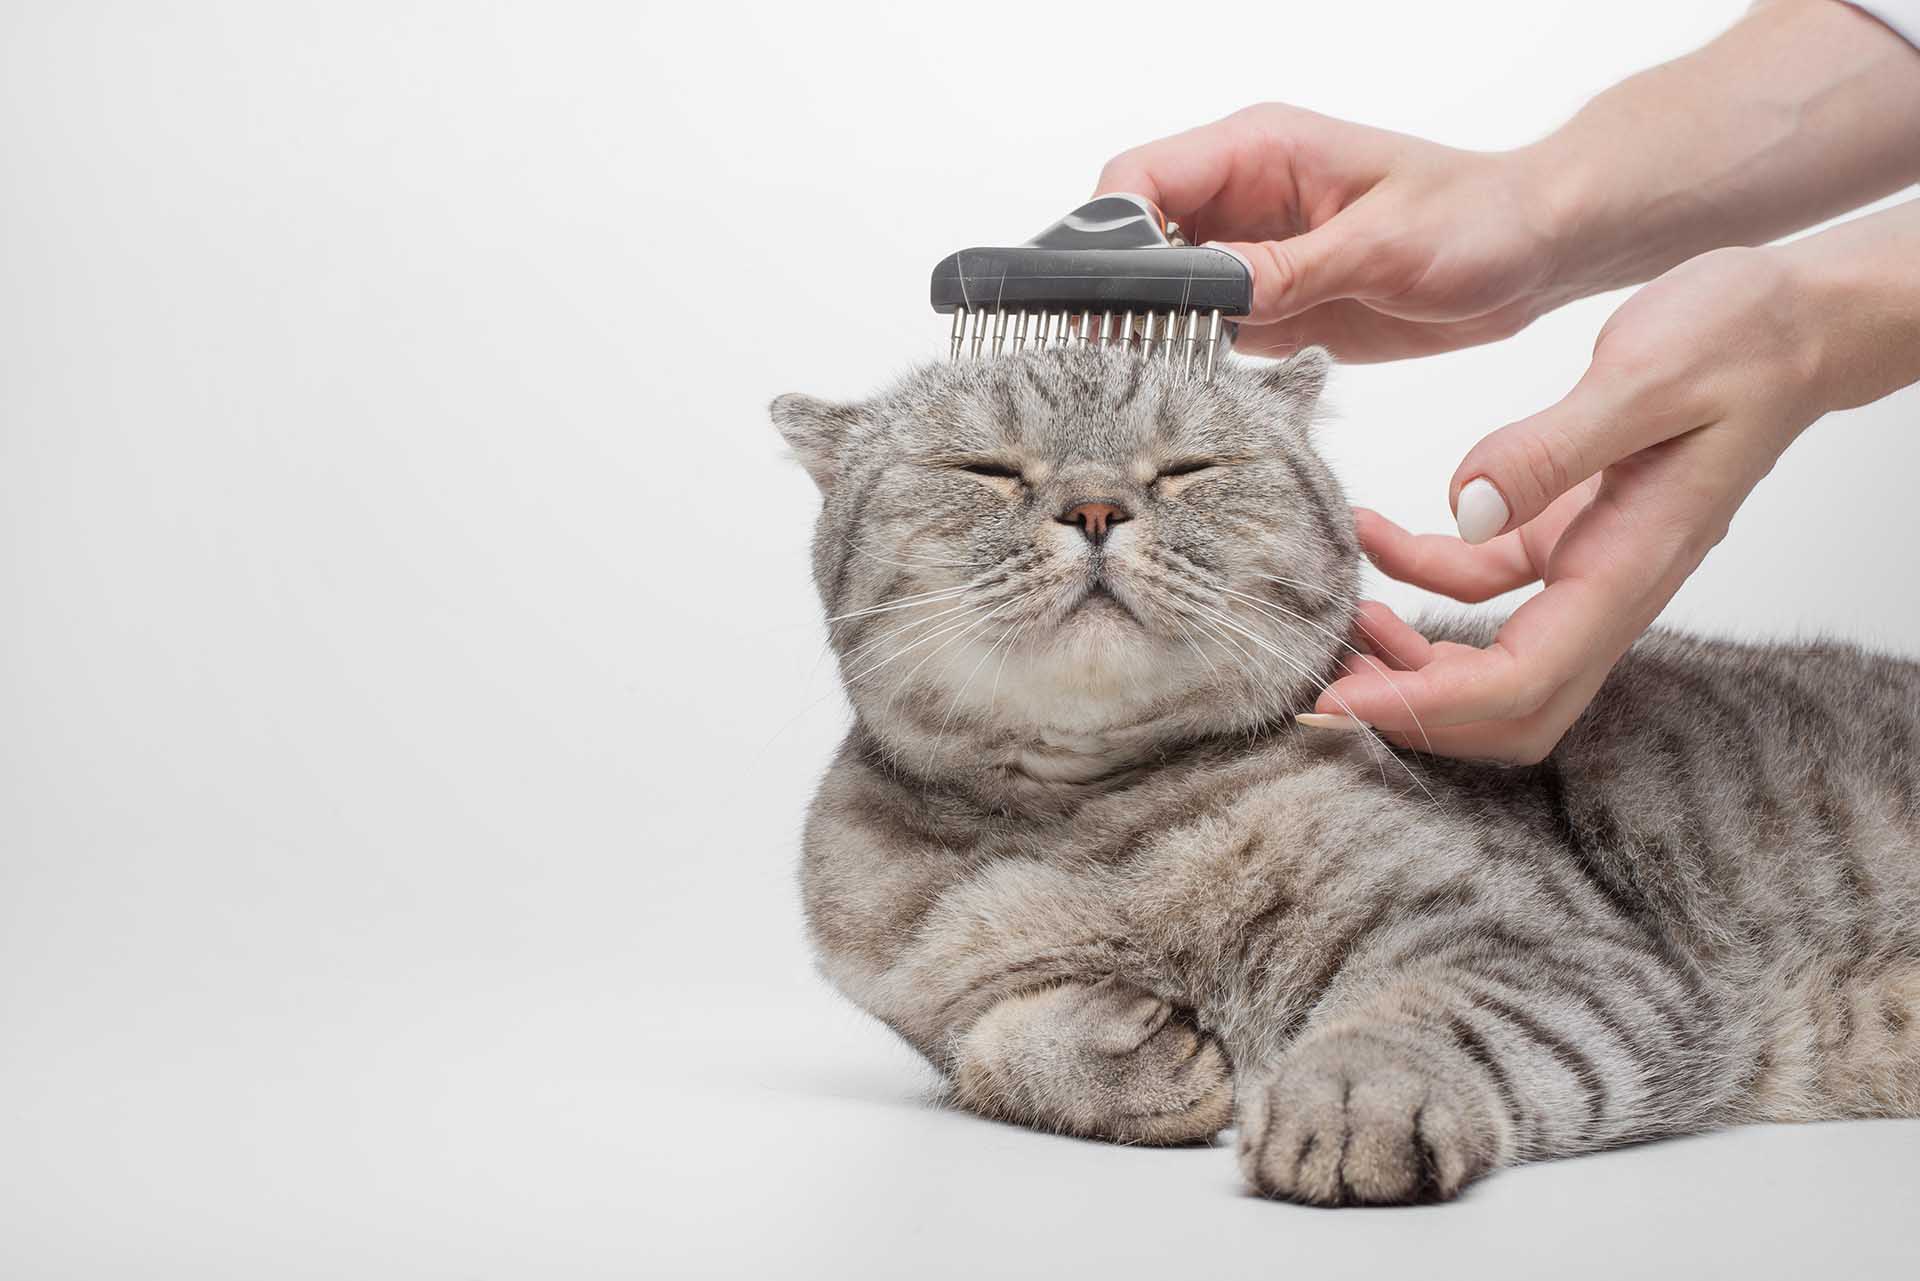 Come scegliere la spazzola giusta per il tuo gatto